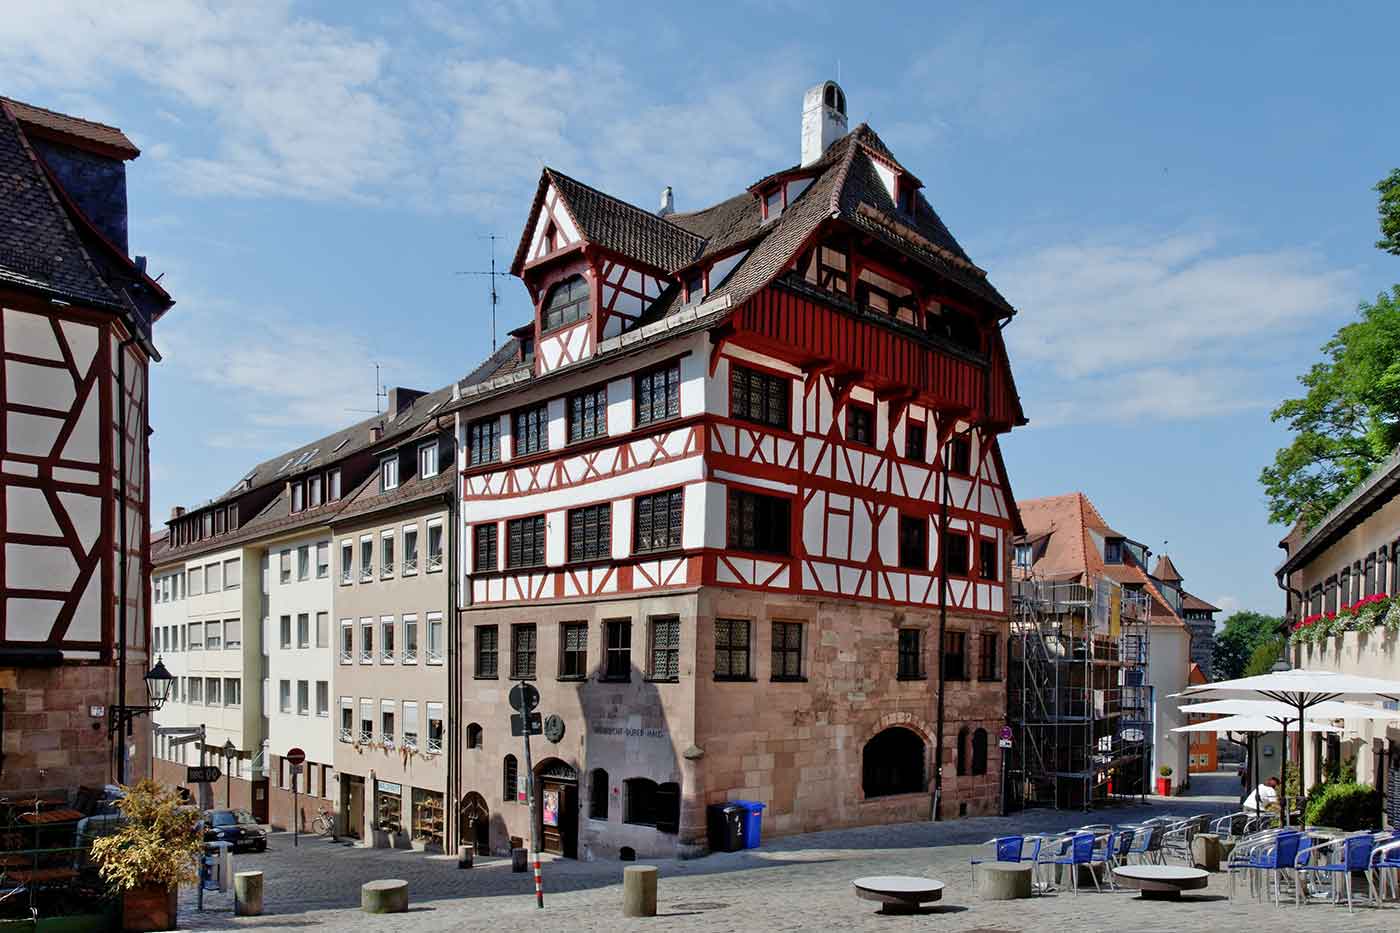 Albrecht Dürer's House